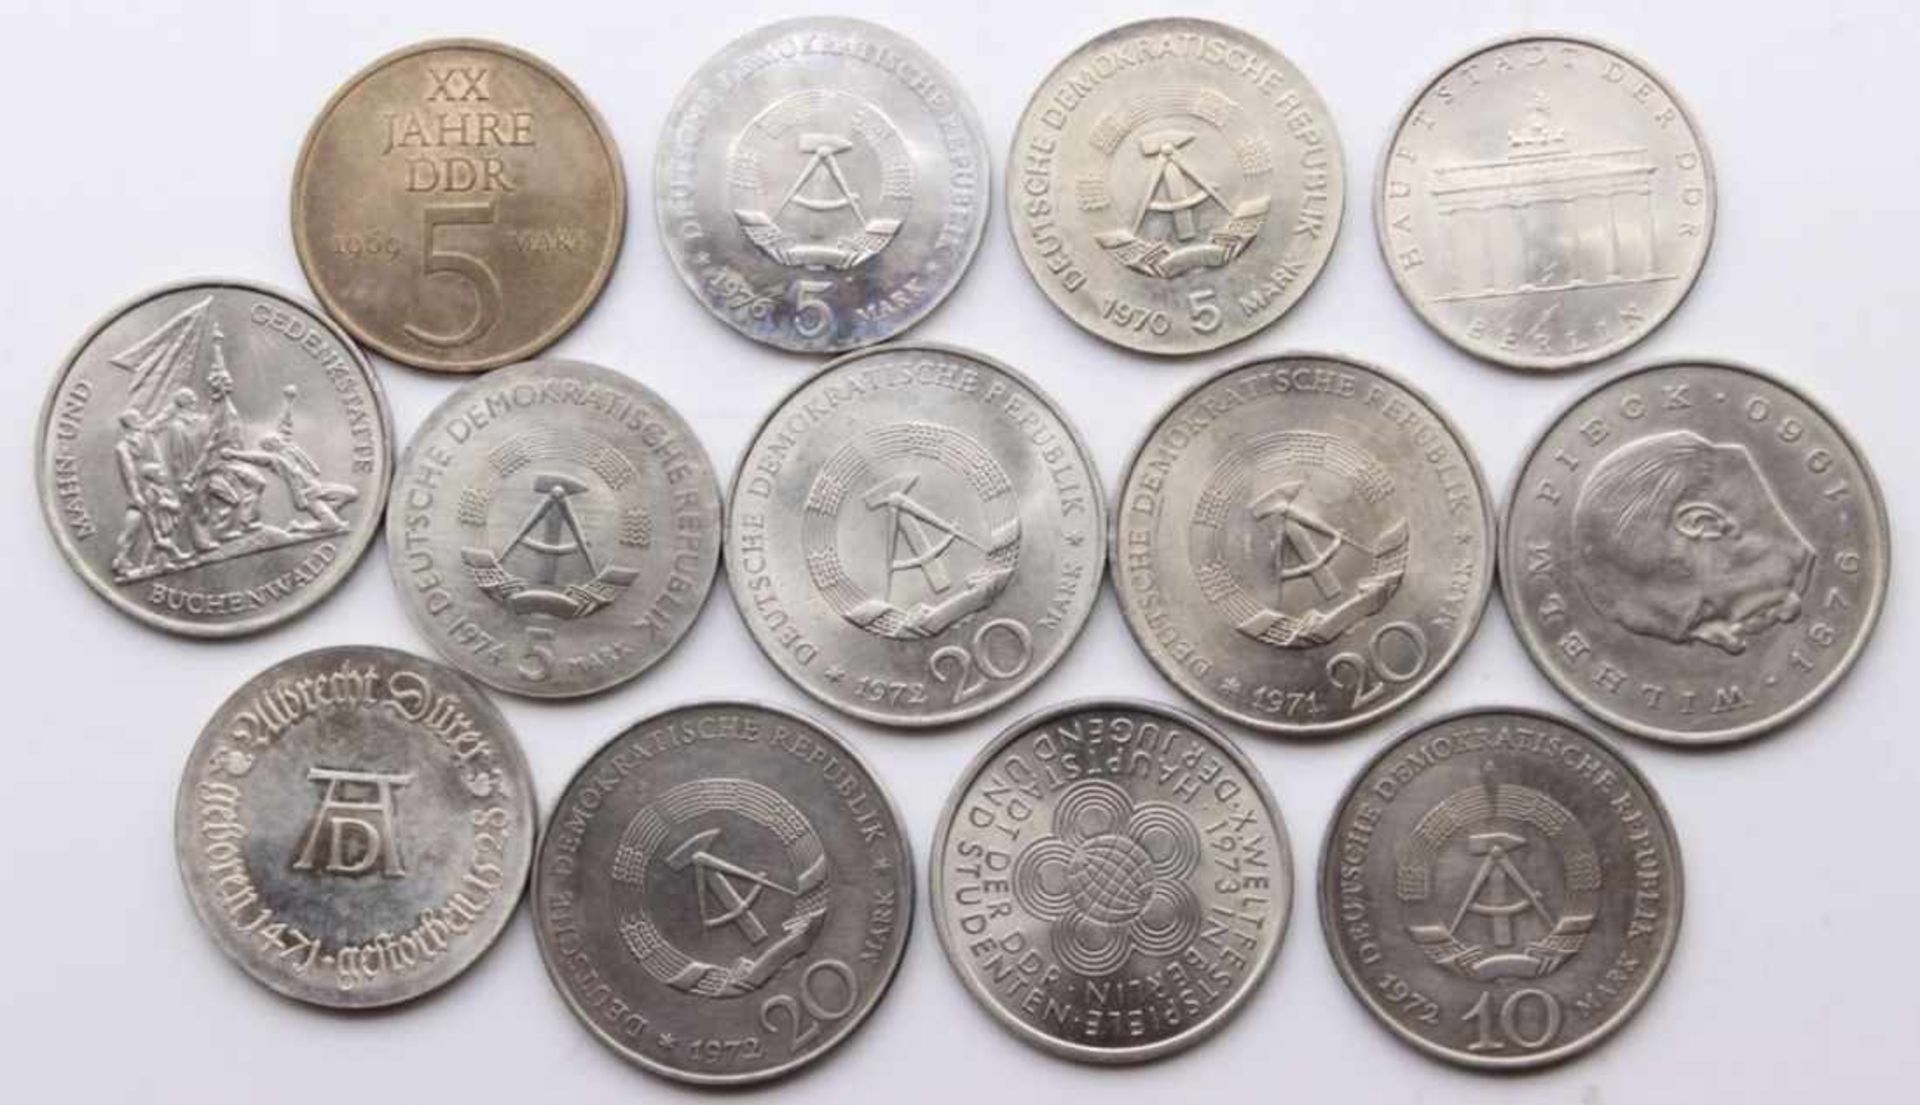 Lot von 13 Münzen DDR 1.5x5 Mark, 1969, 20 Jahre DDR, 1970 Röntgen, 1971 Berlin, 1974 Reiss, 1976